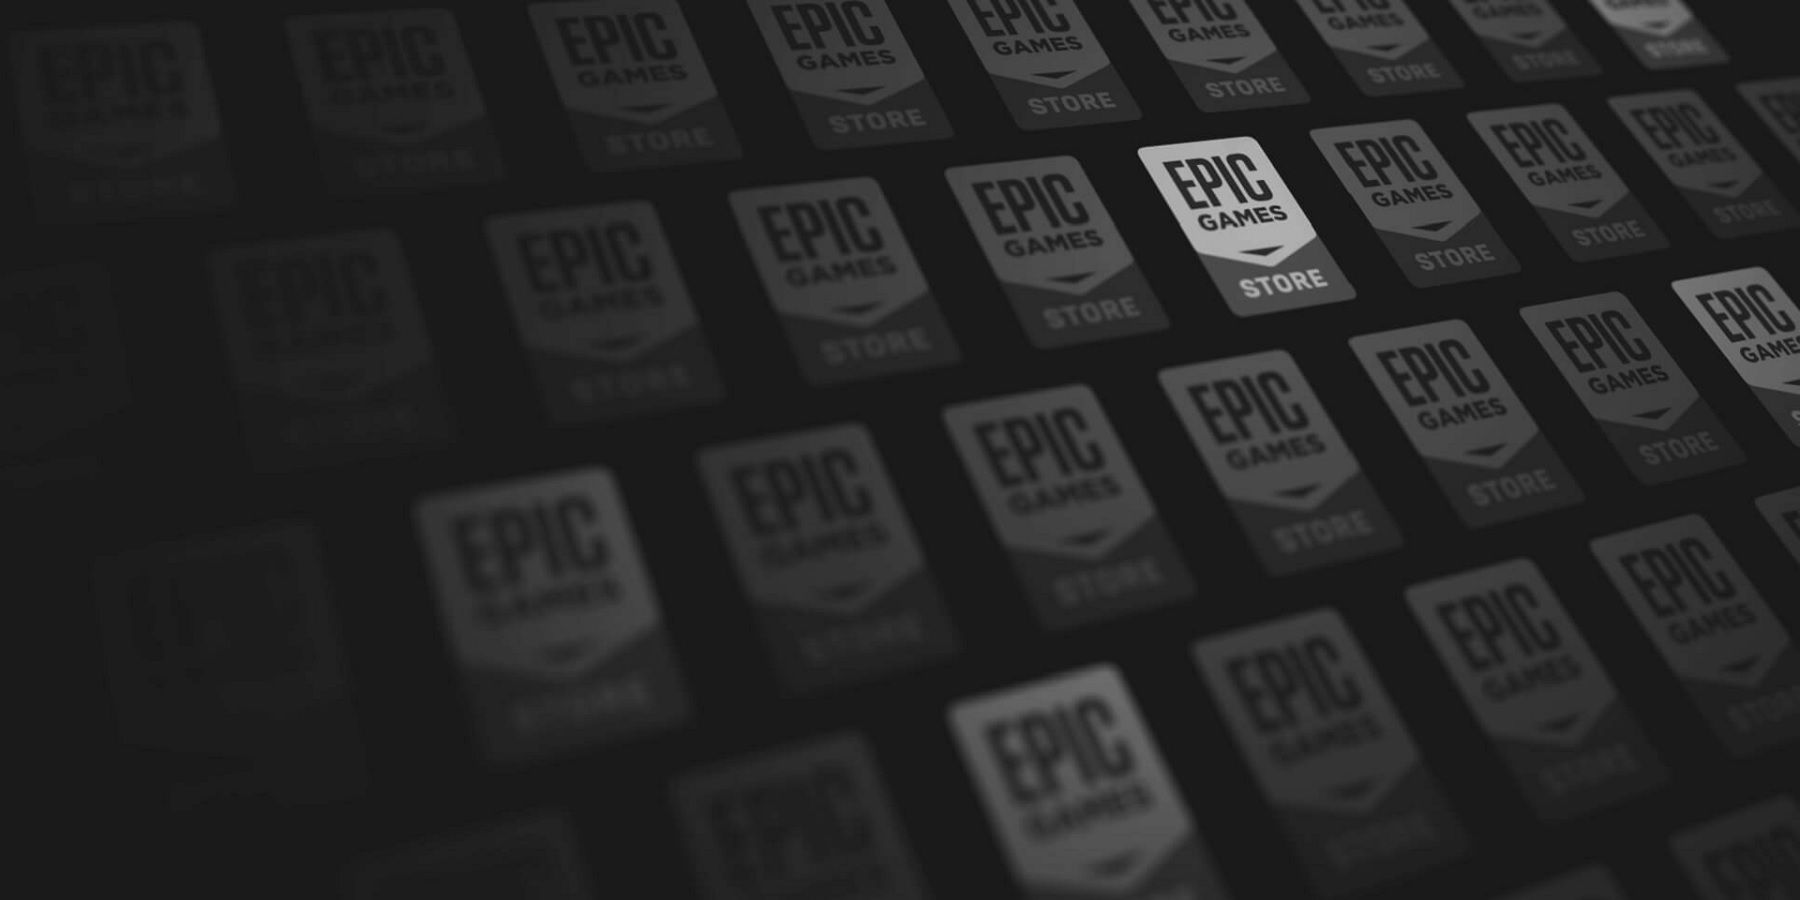 Epic Games Store Logos Jpg